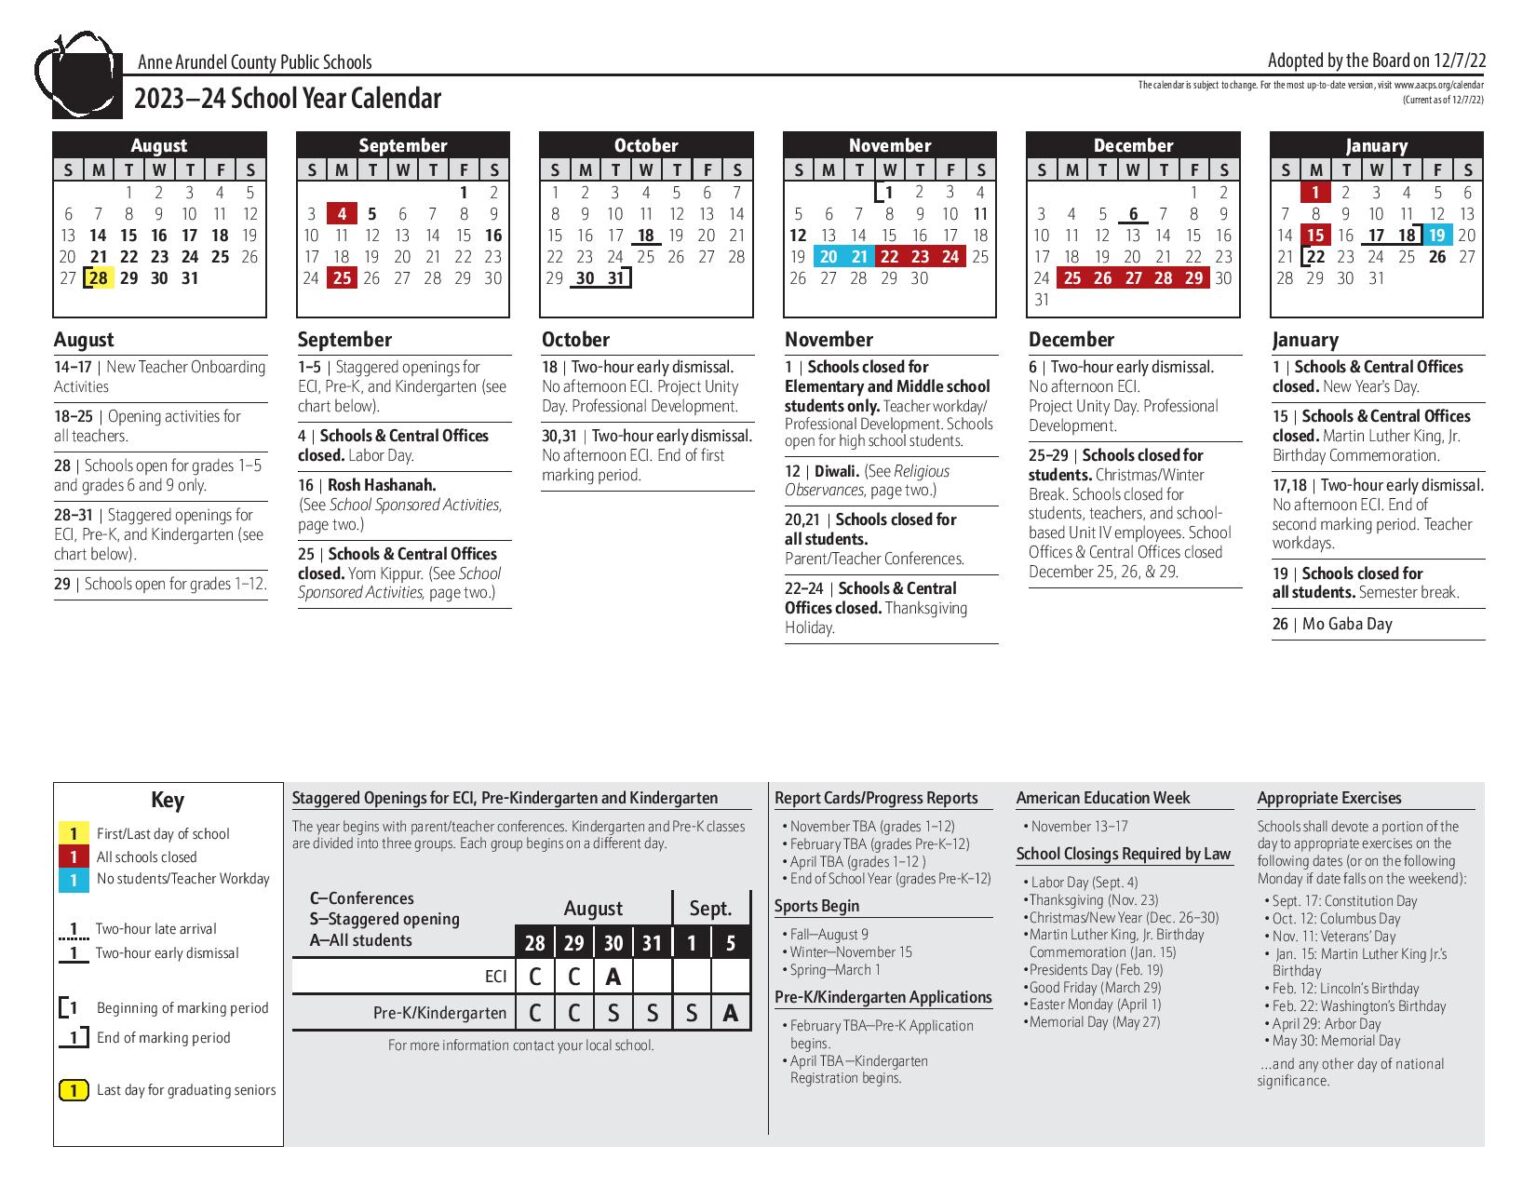 anne-arundel-county-public-schools-calendar-2023-2024-pdf